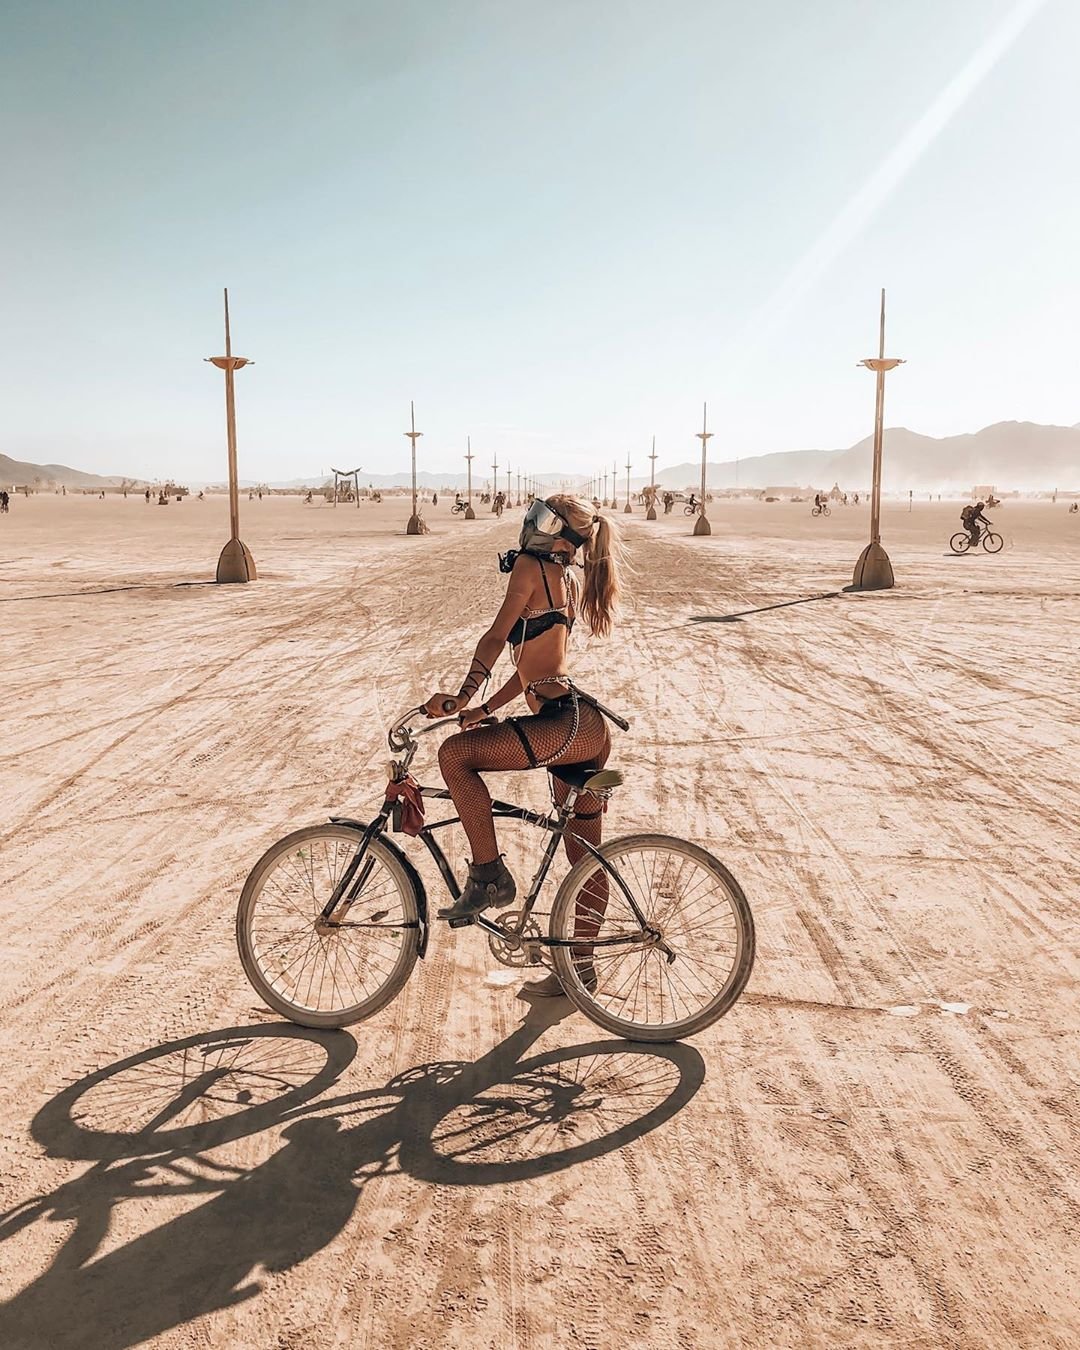 Нереальной красоты скульптуры и голые тела на фестивале Burning Man 2019 - фото 448420